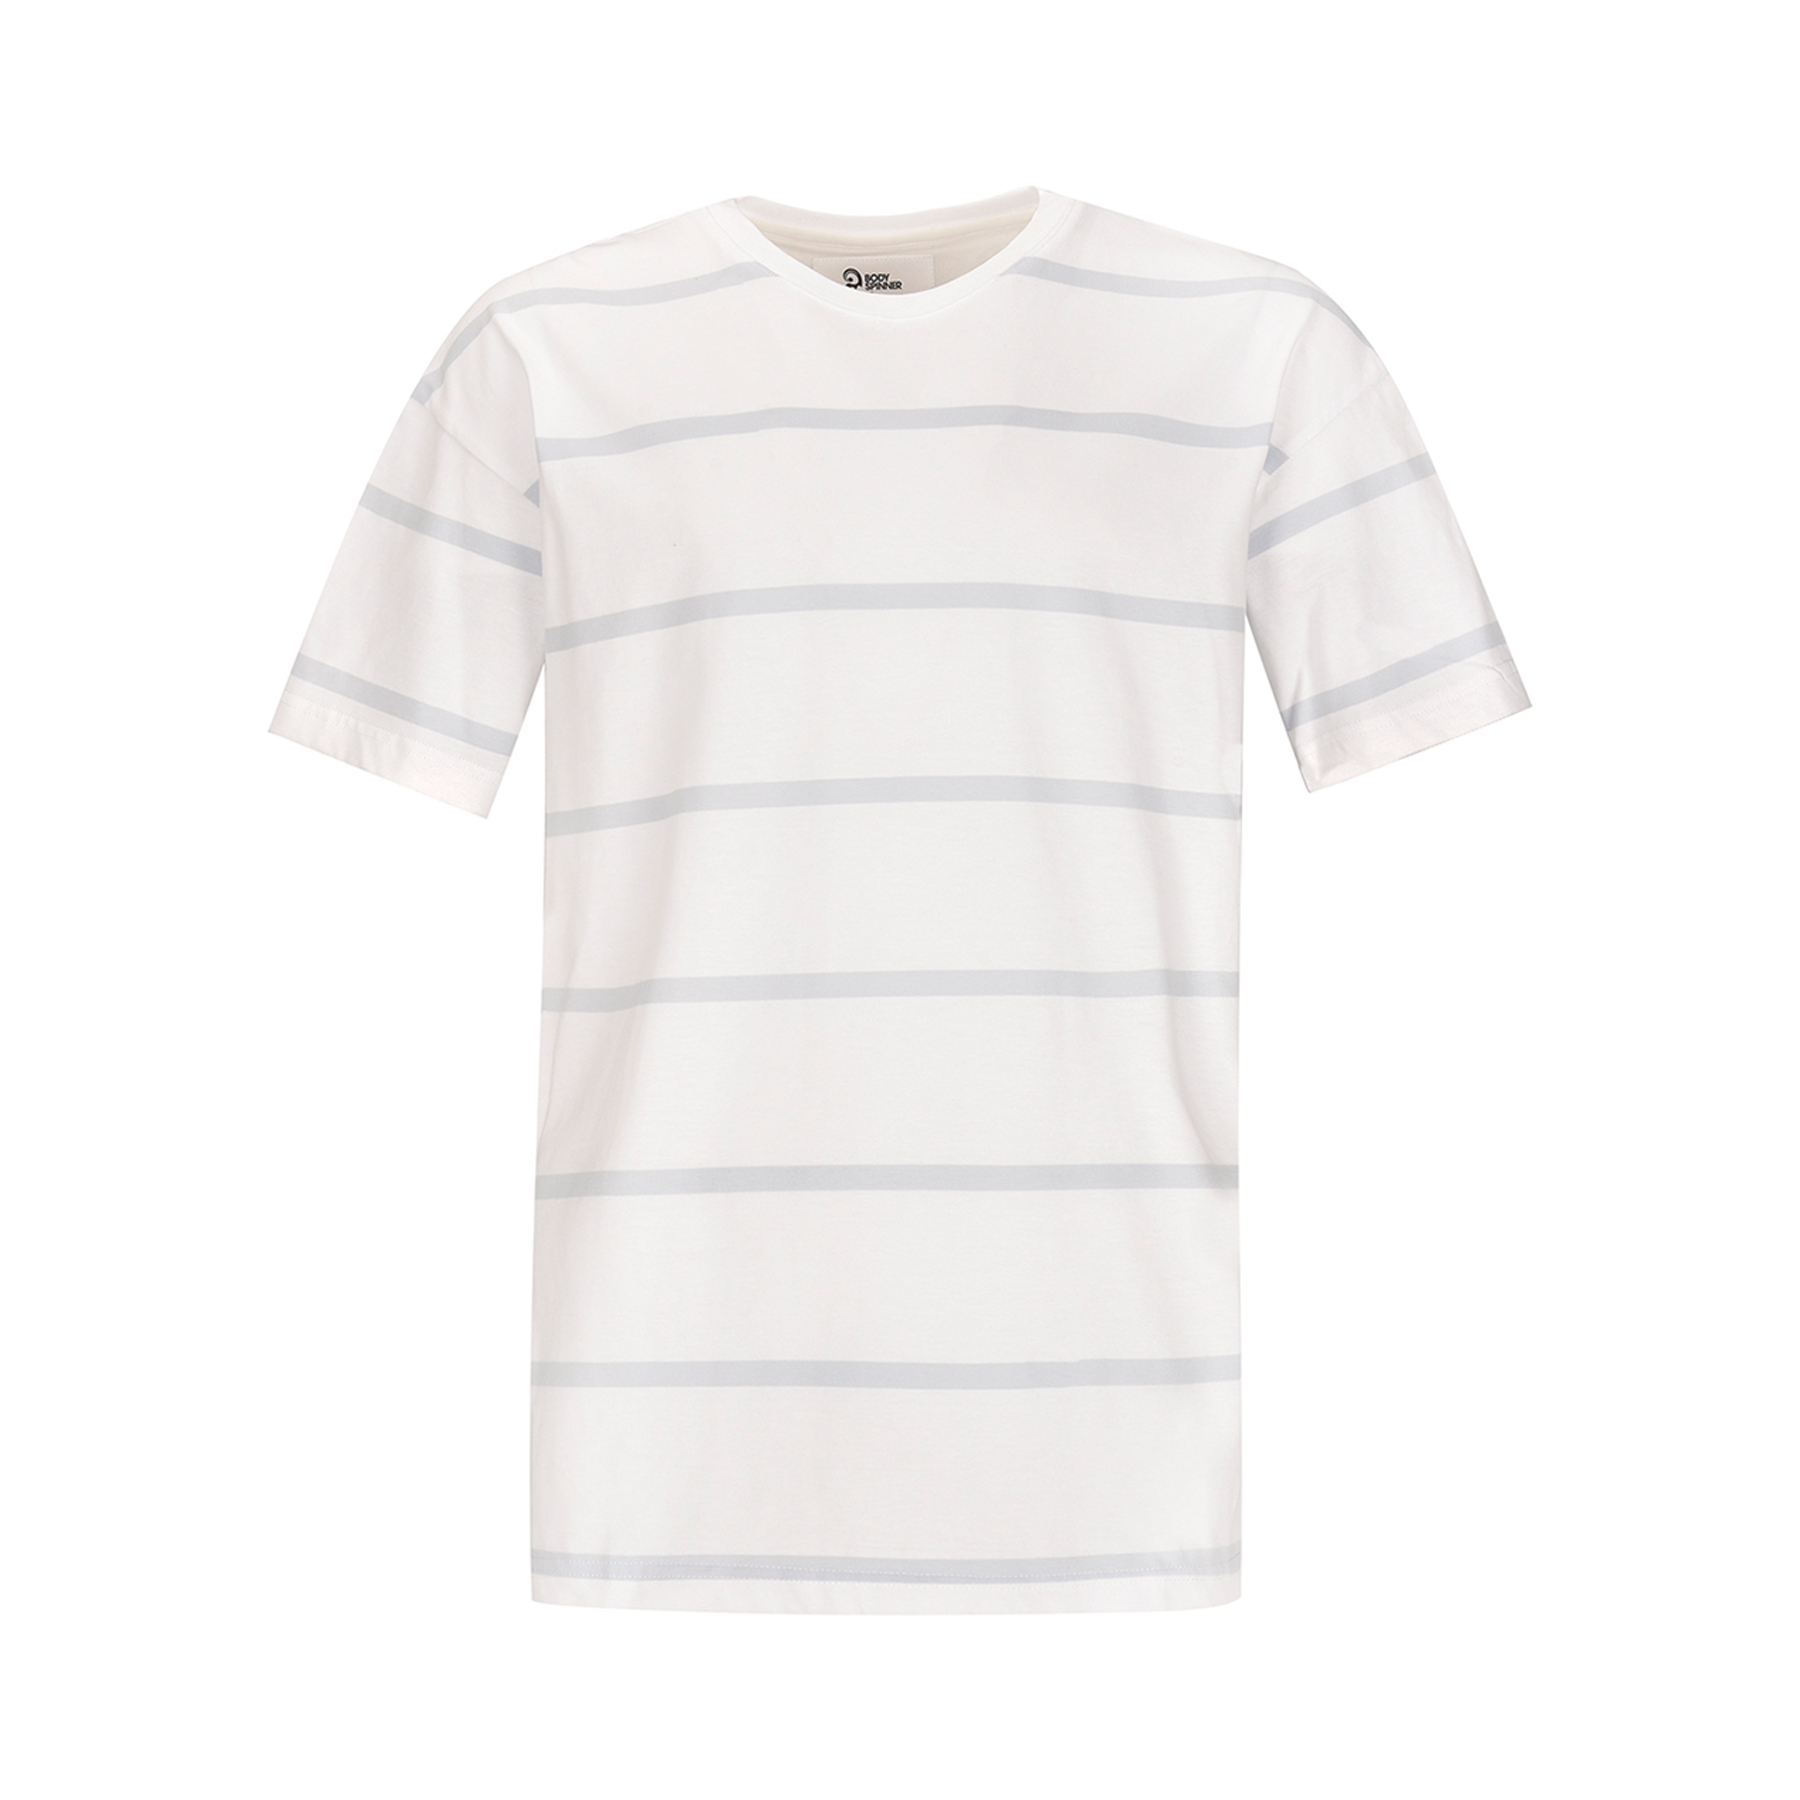 تی شرت آستین کوتاه مردانه بادی اسپینر مدل 3315 کد 1 رنگ آبی -  - 1